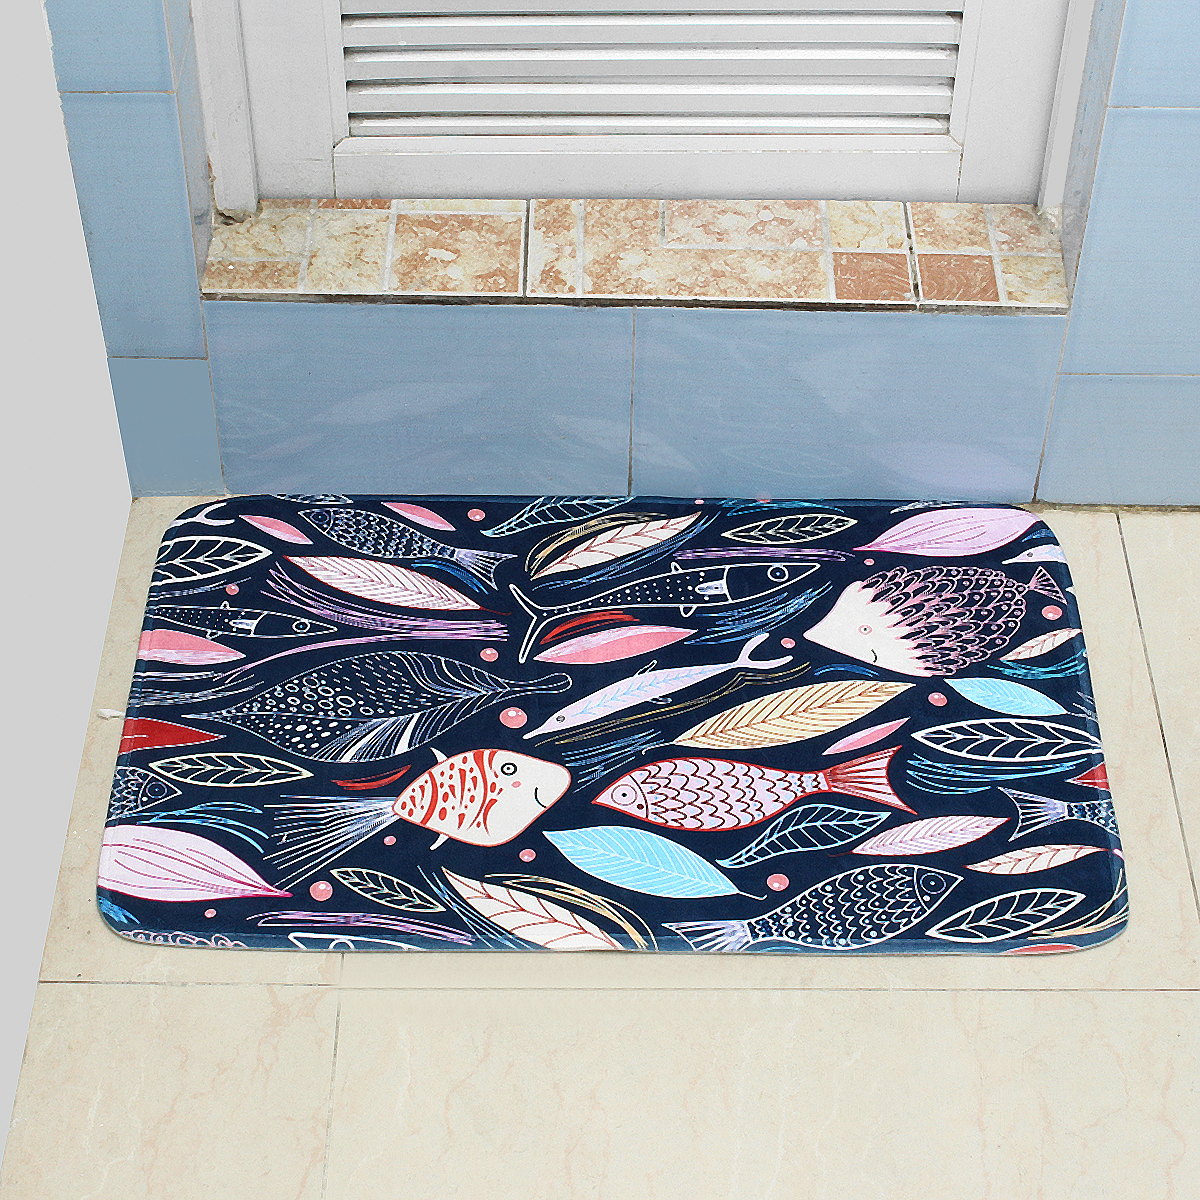 4575cm-Bathroom-Shower-Bath-Mat-Non-Slip-Back-Carpet-Mat-Toilet-Rug-Leaves-Design-1376502-11